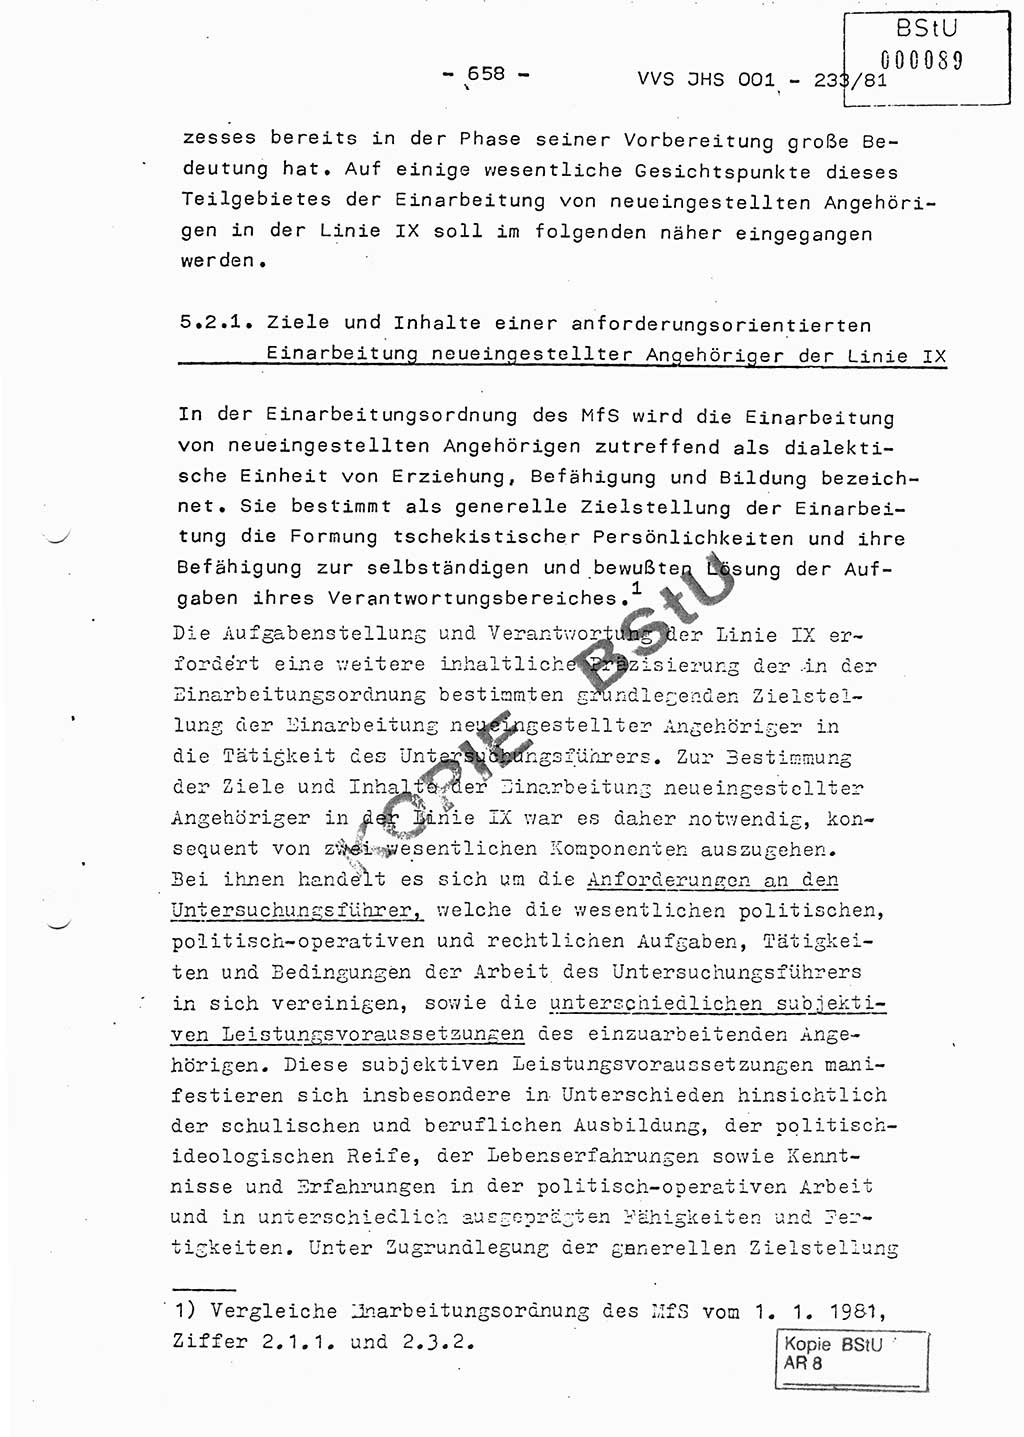 Dissertation Oberstleutnant Horst Zank (JHS), Oberstleutnant Dr. Karl-Heinz Knoblauch (JHS), Oberstleutnant Gustav-Adolf Kowalewski (HA Ⅸ), Oberstleutnant Wolfgang Plötner (HA Ⅸ), Ministerium für Staatssicherheit (MfS) [Deutsche Demokratische Republik (DDR)], Juristische Hochschule (JHS), Vertrauliche Verschlußsache (VVS) o001-233/81, Potsdam 1981, Blatt 658 (Diss. MfS DDR JHS VVS o001-233/81 1981, Bl. 658)